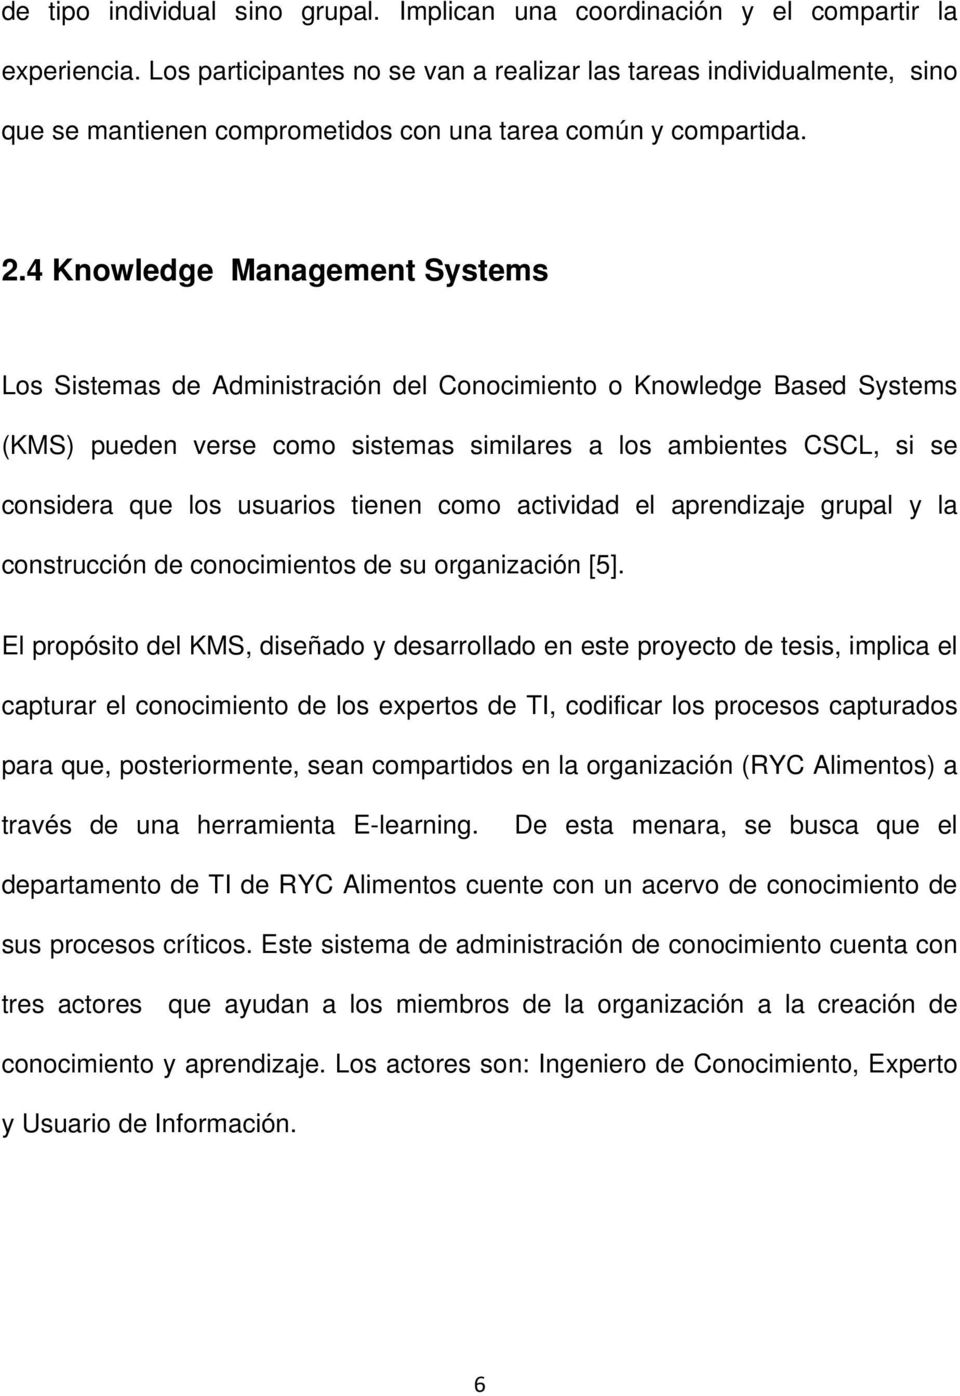 4 Knowledge Management Systems Los Sistemas de Administración del Conocimiento o Knowledge Based Systems (KMS) pueden verse como sistemas similares a los ambientes CSCL, si se considera que los